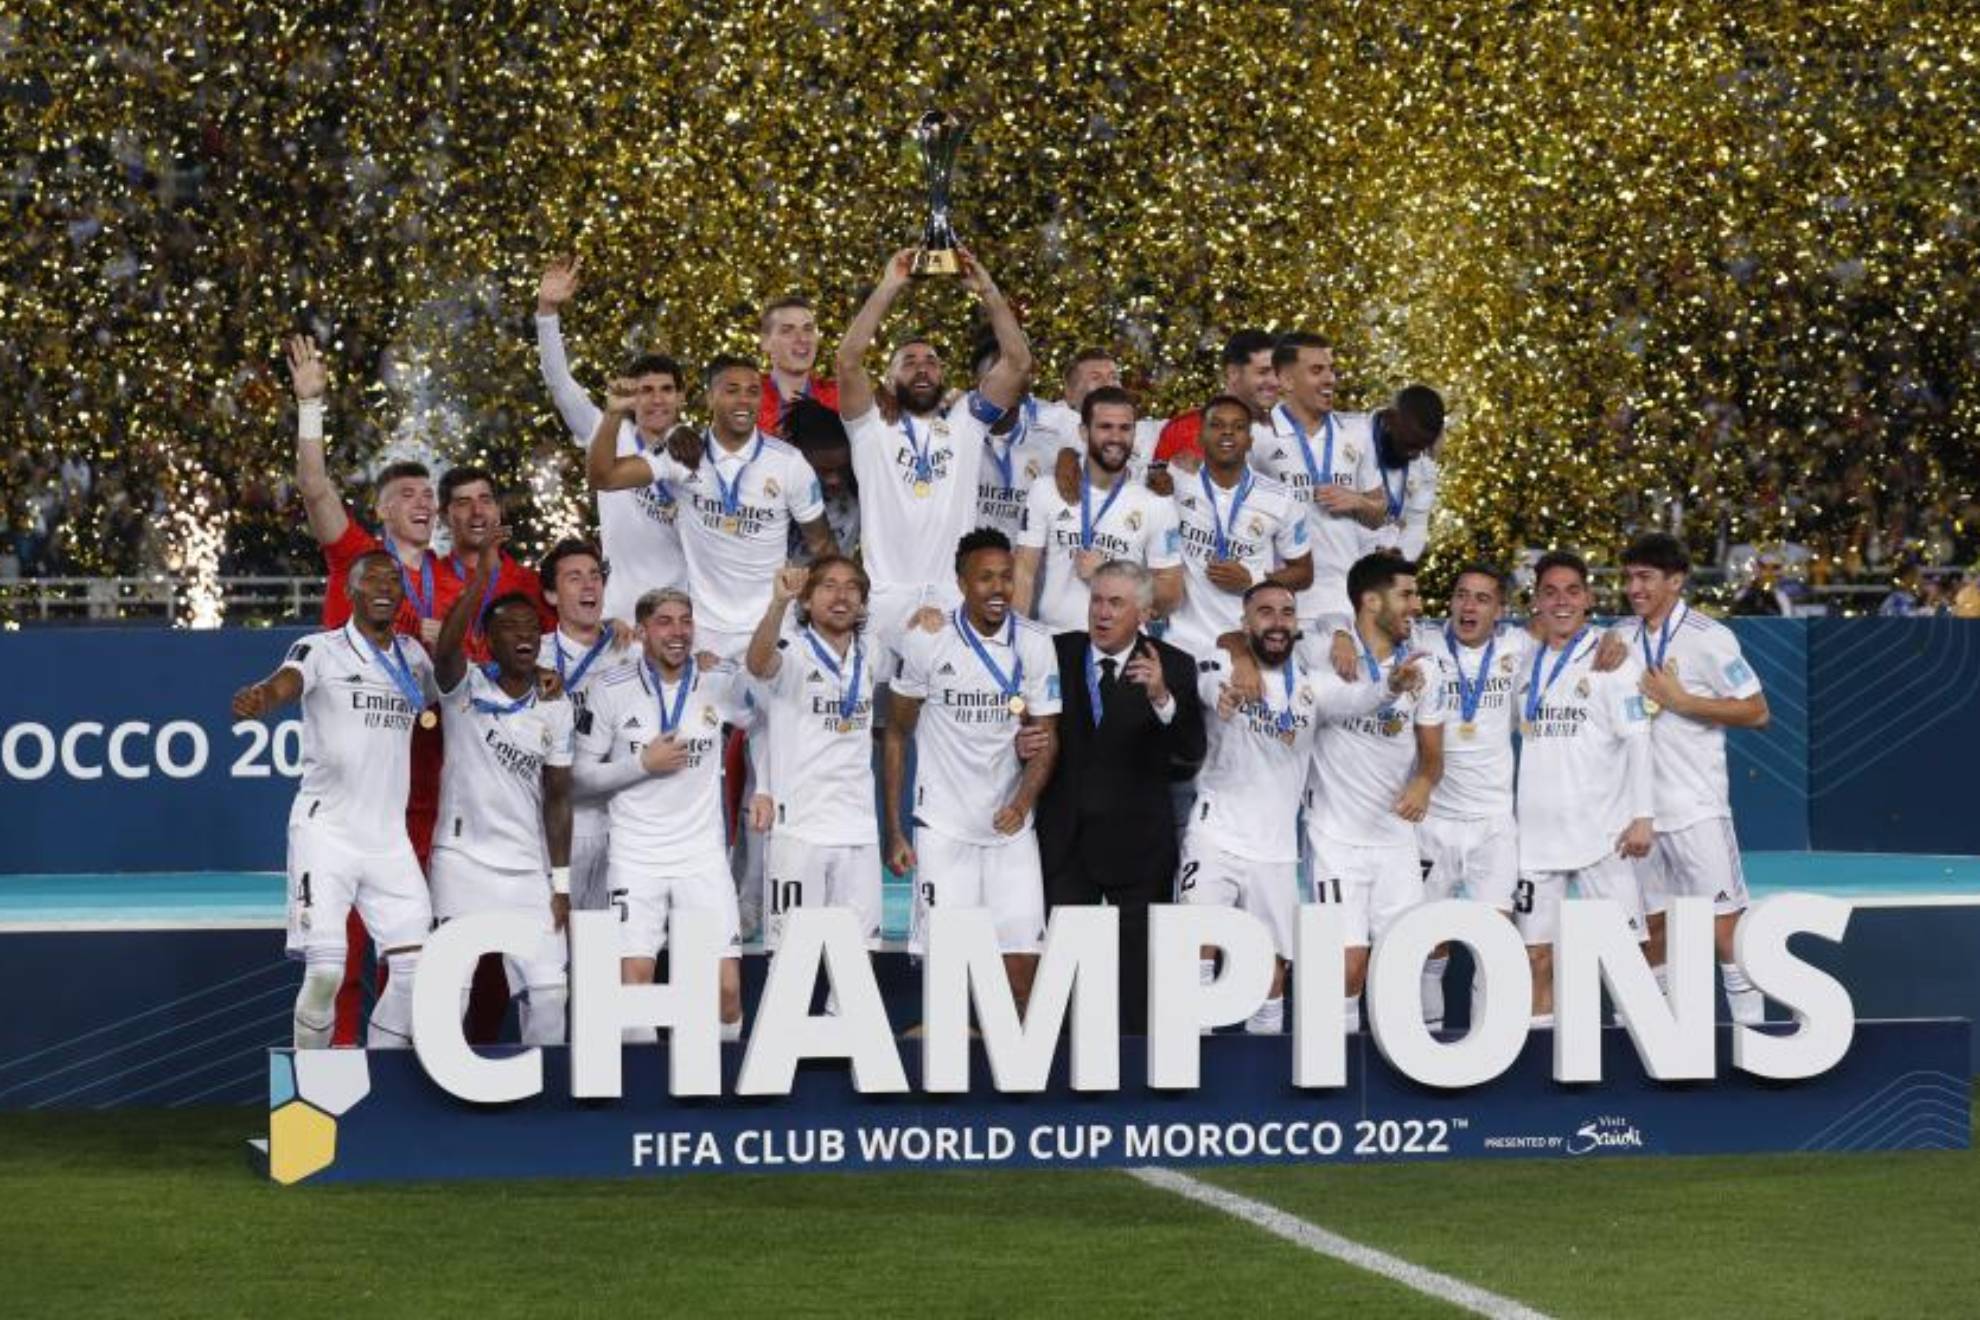 Real Madrid es el más ganador con ocho títulos (cinco Mundiales de Clubes y tres Intercontinentales)